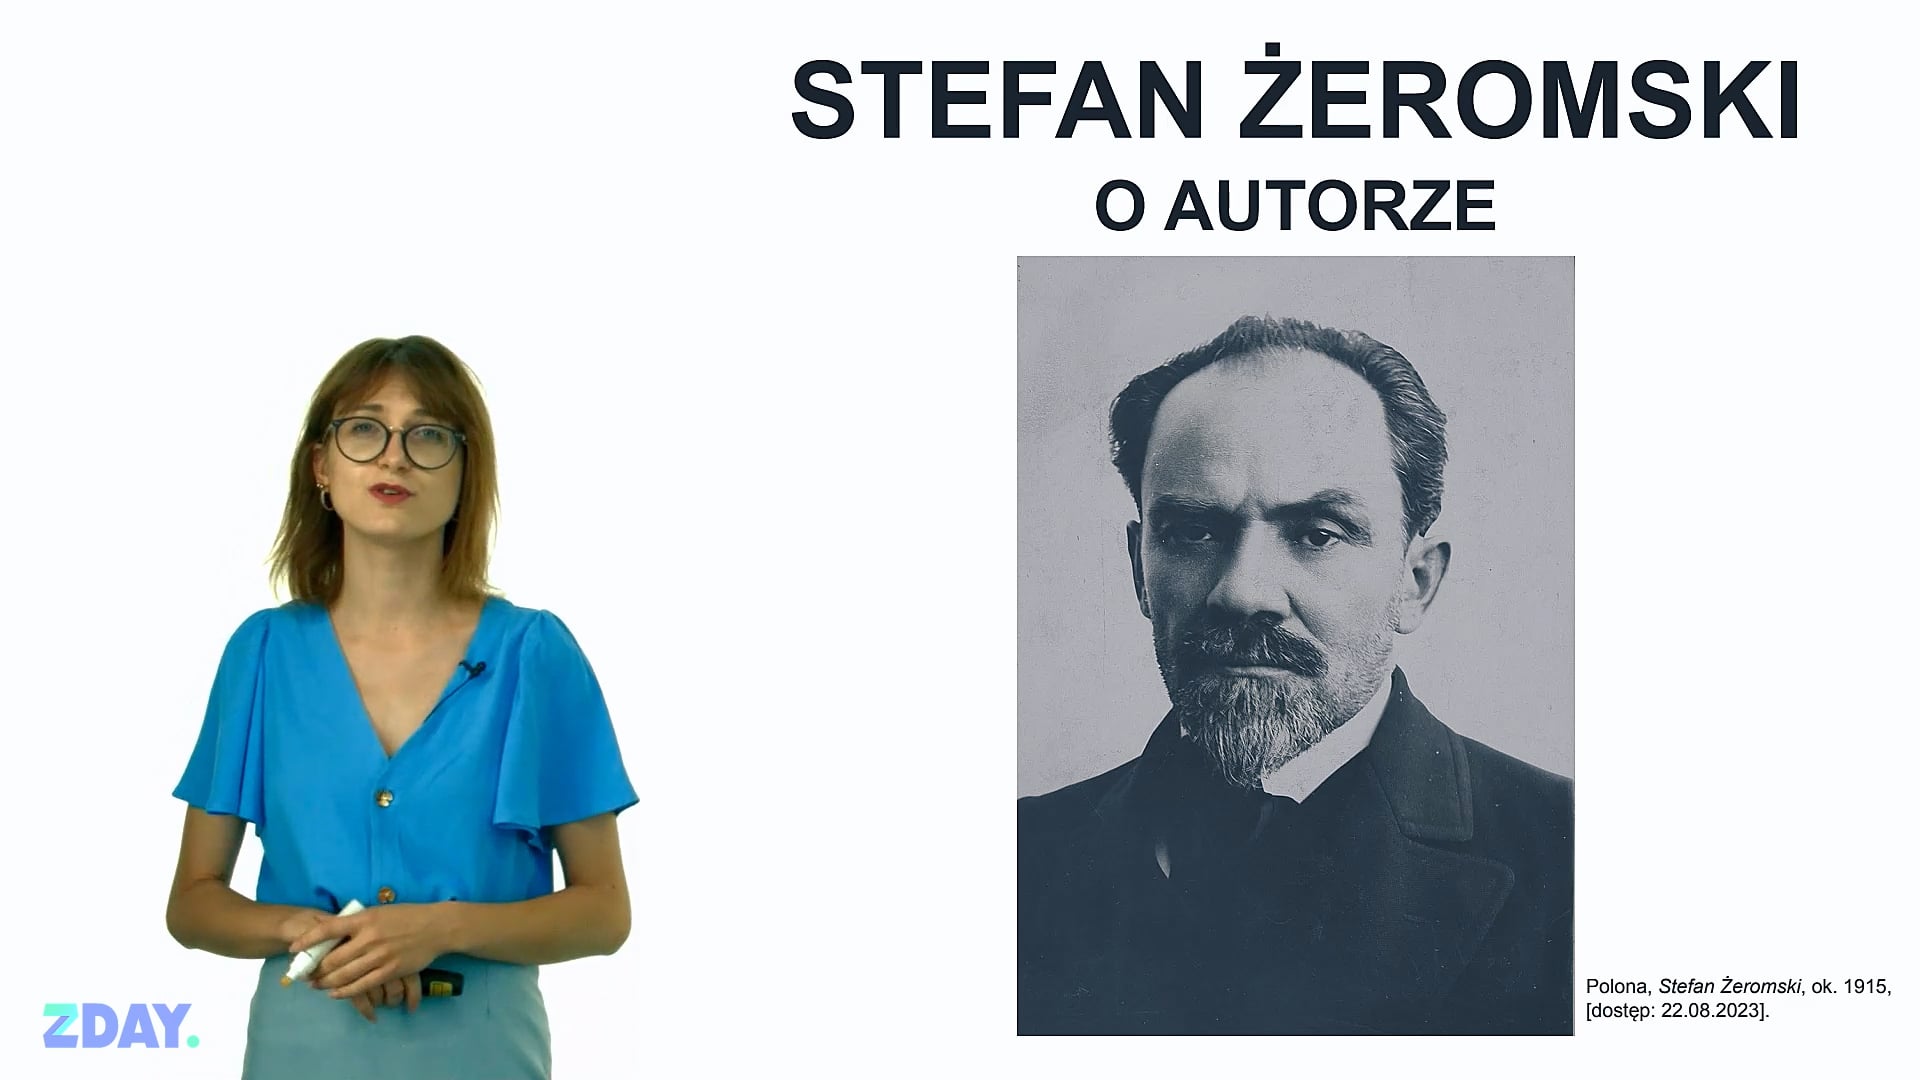 Miniaturka materiału wideo na temat: Stefan Żeromski – o autorze. Kliknij, aby obejrzeć materiał.